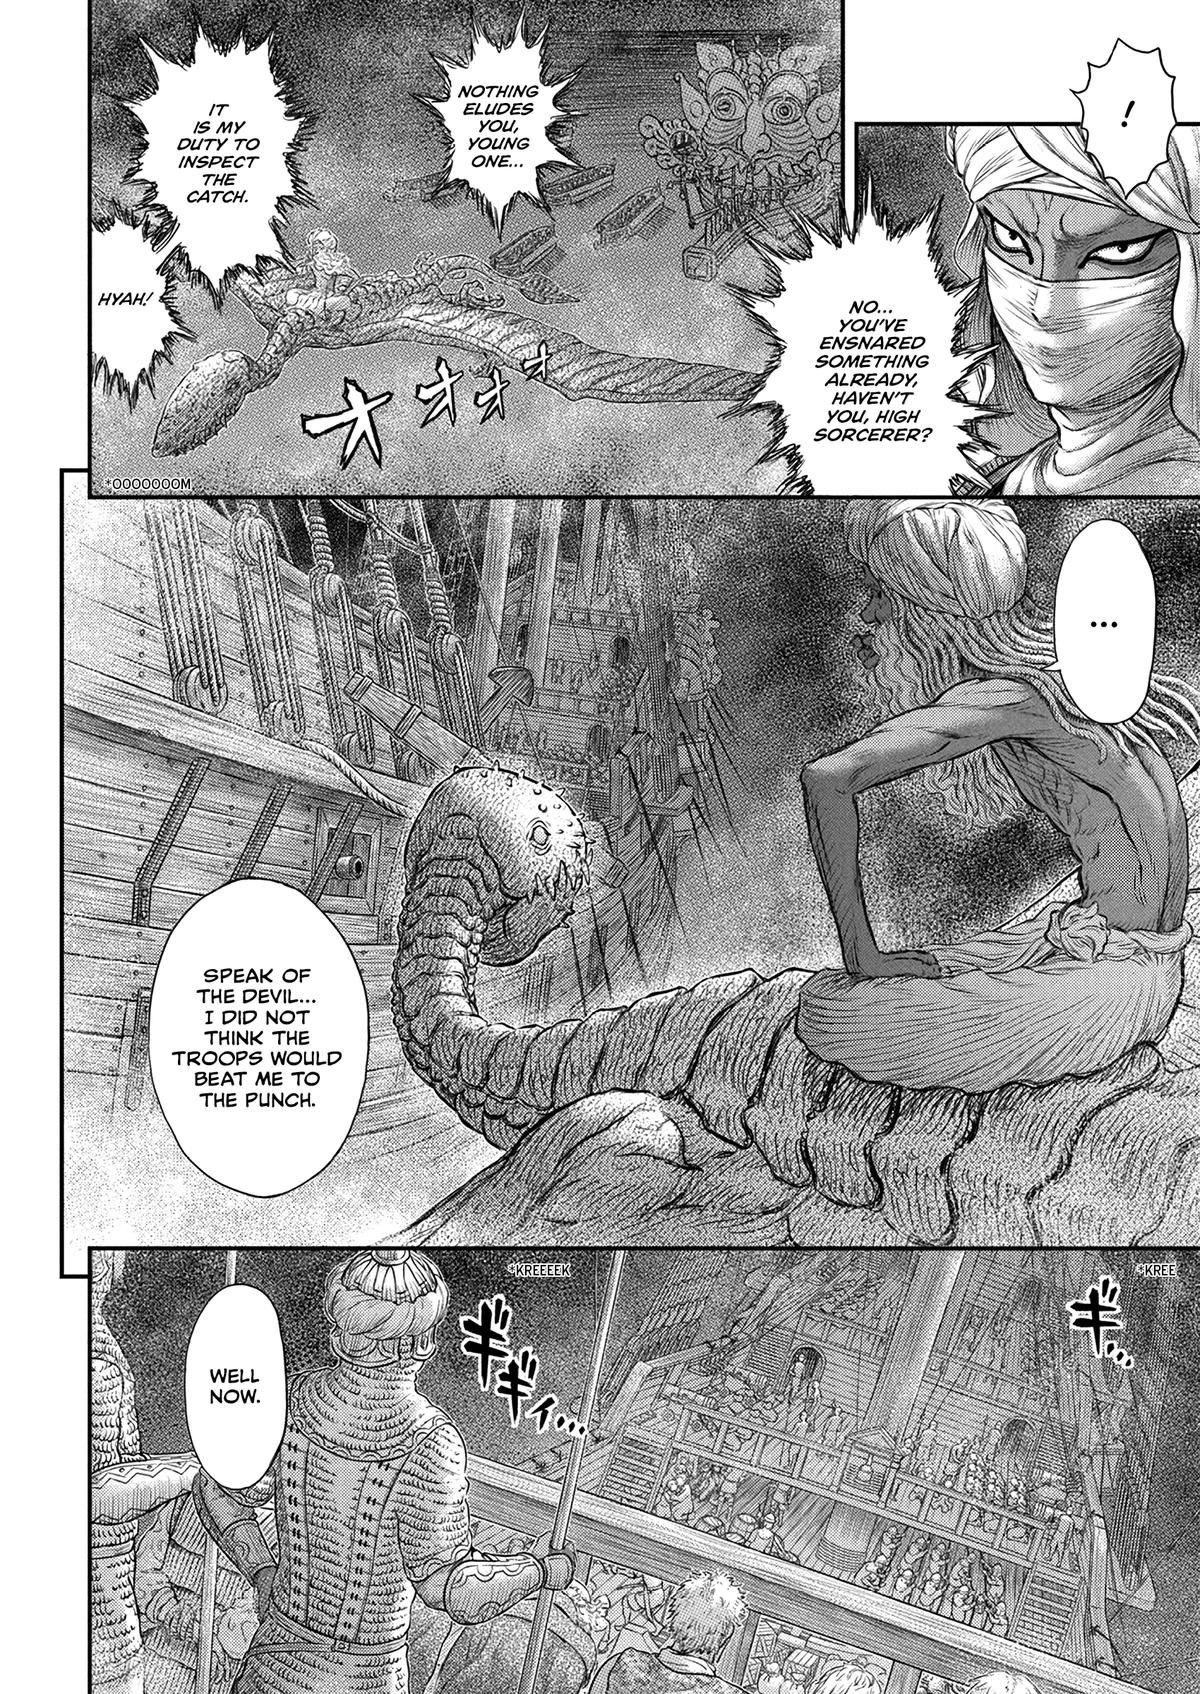 Berserk Manga Chapter 375 image 06